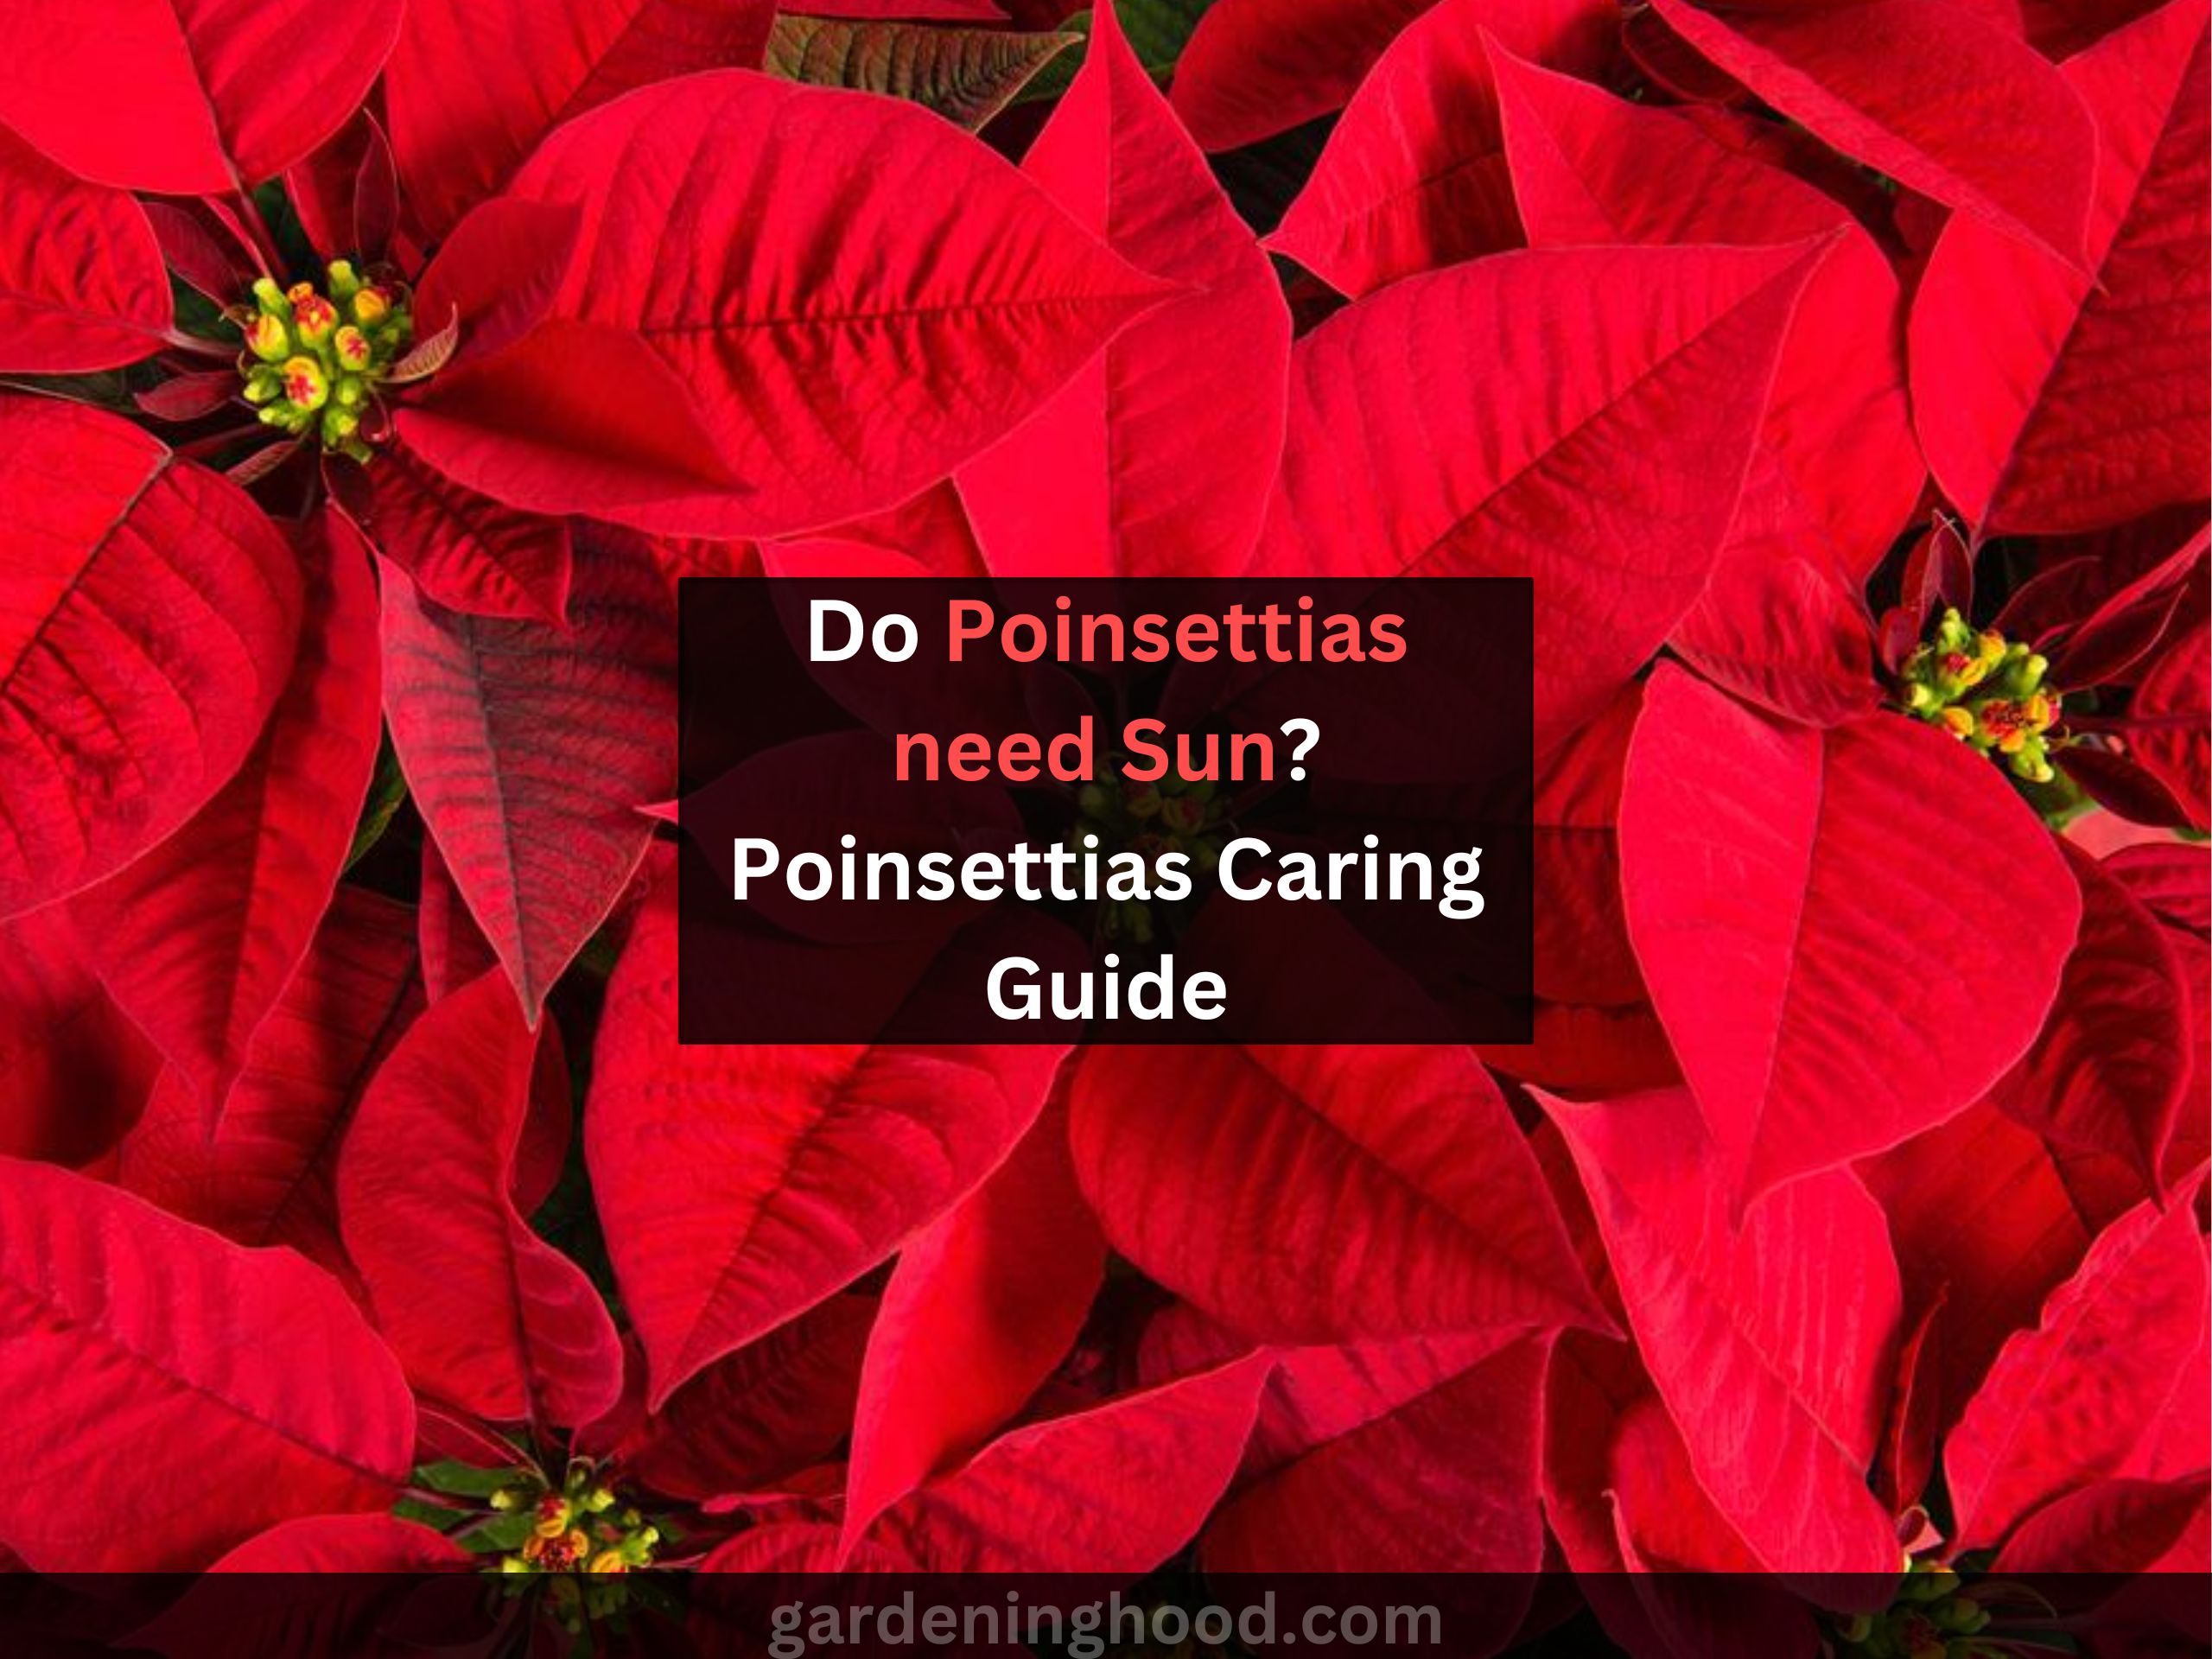 Do Poinsettias need Sun? Poinsettias Caring Guide